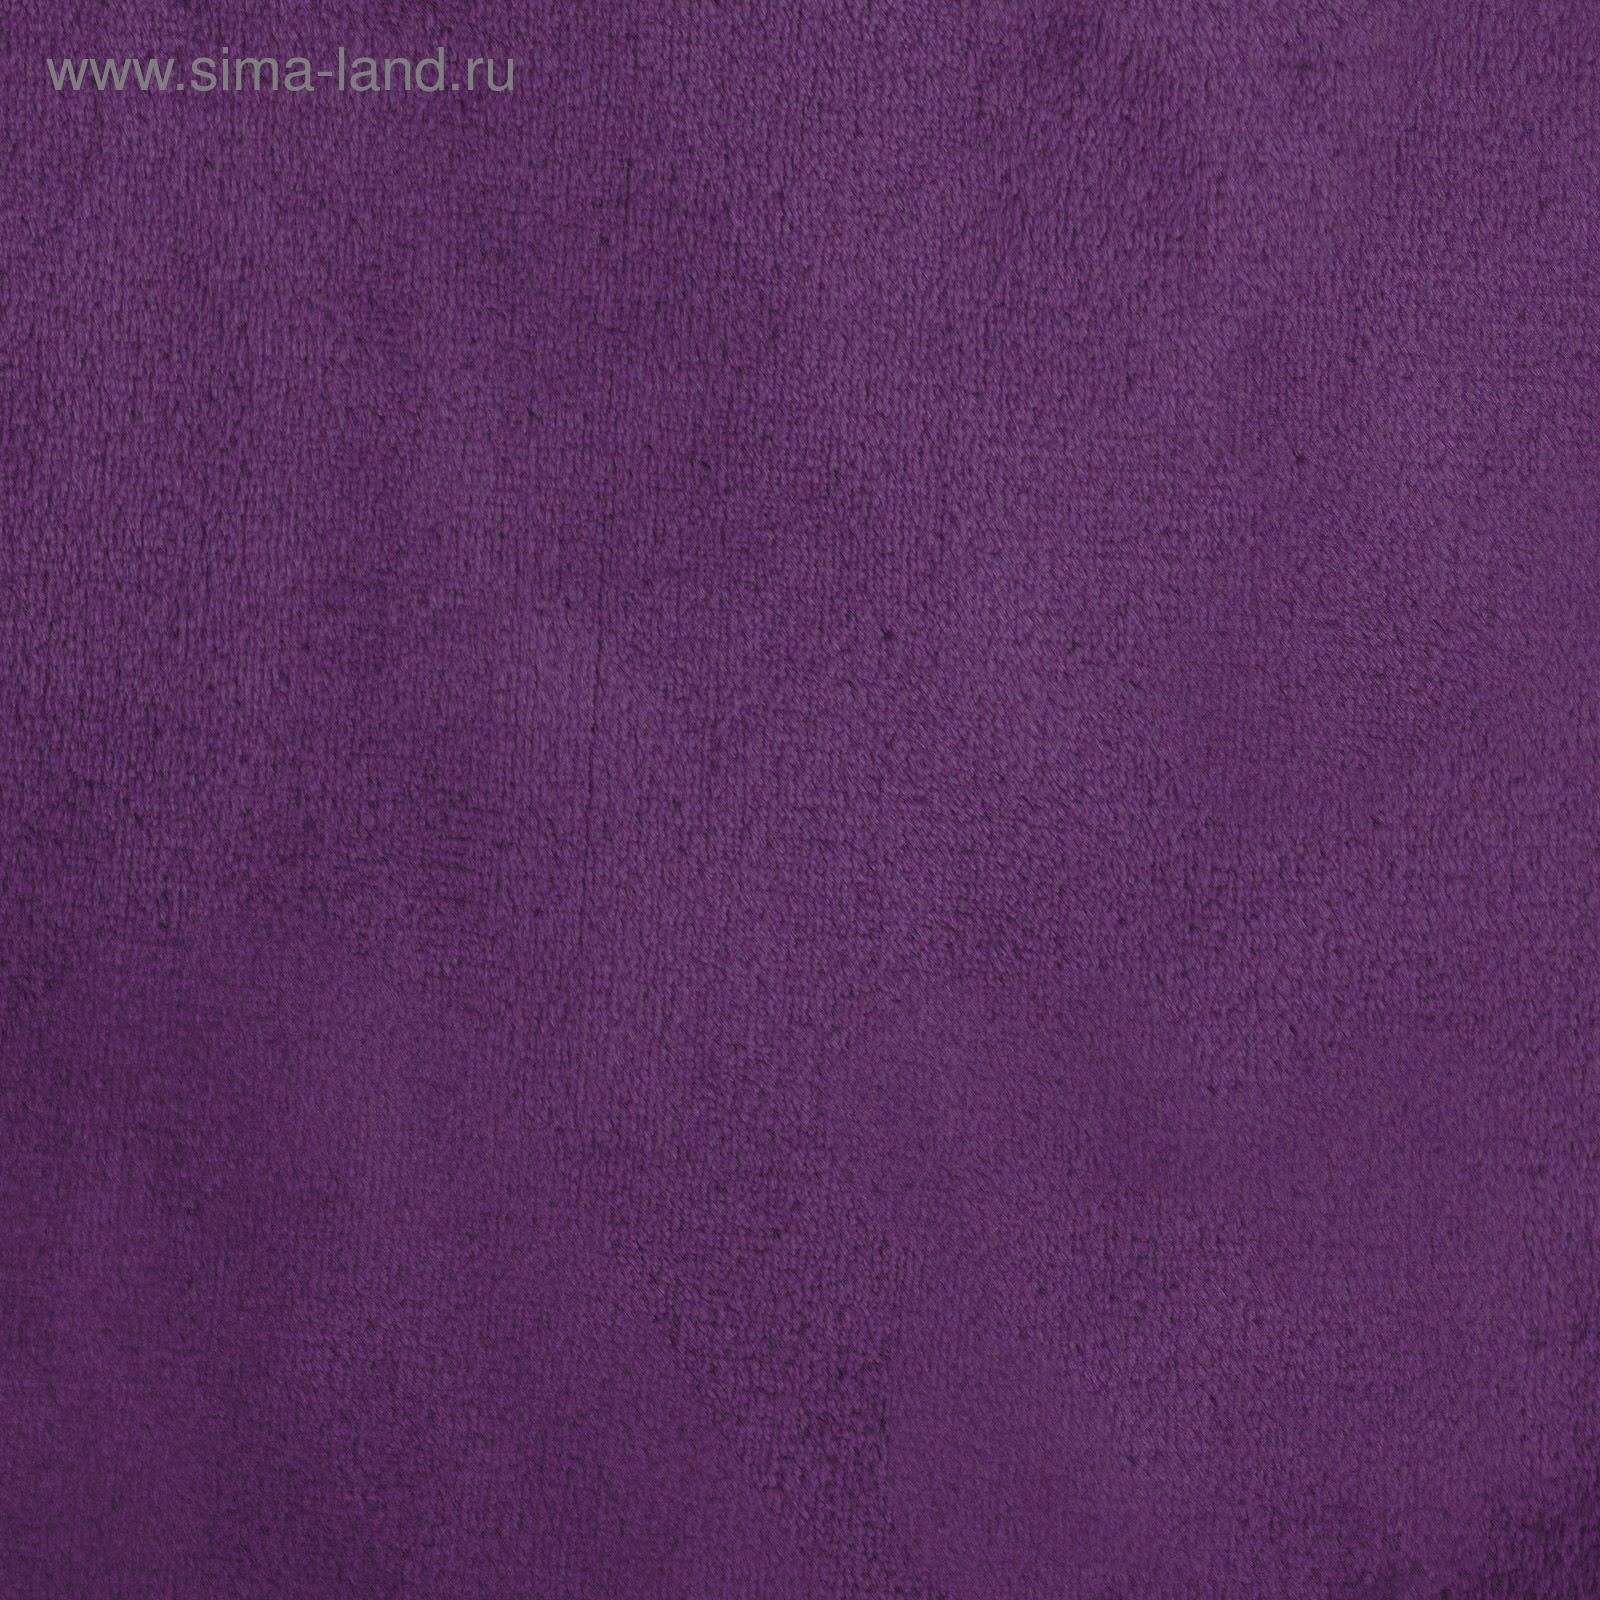 Сайт аметист ткани. Аметист мебельные ткани Coral. D-Art Corali фиолетовые 0.53 м 9728-2.